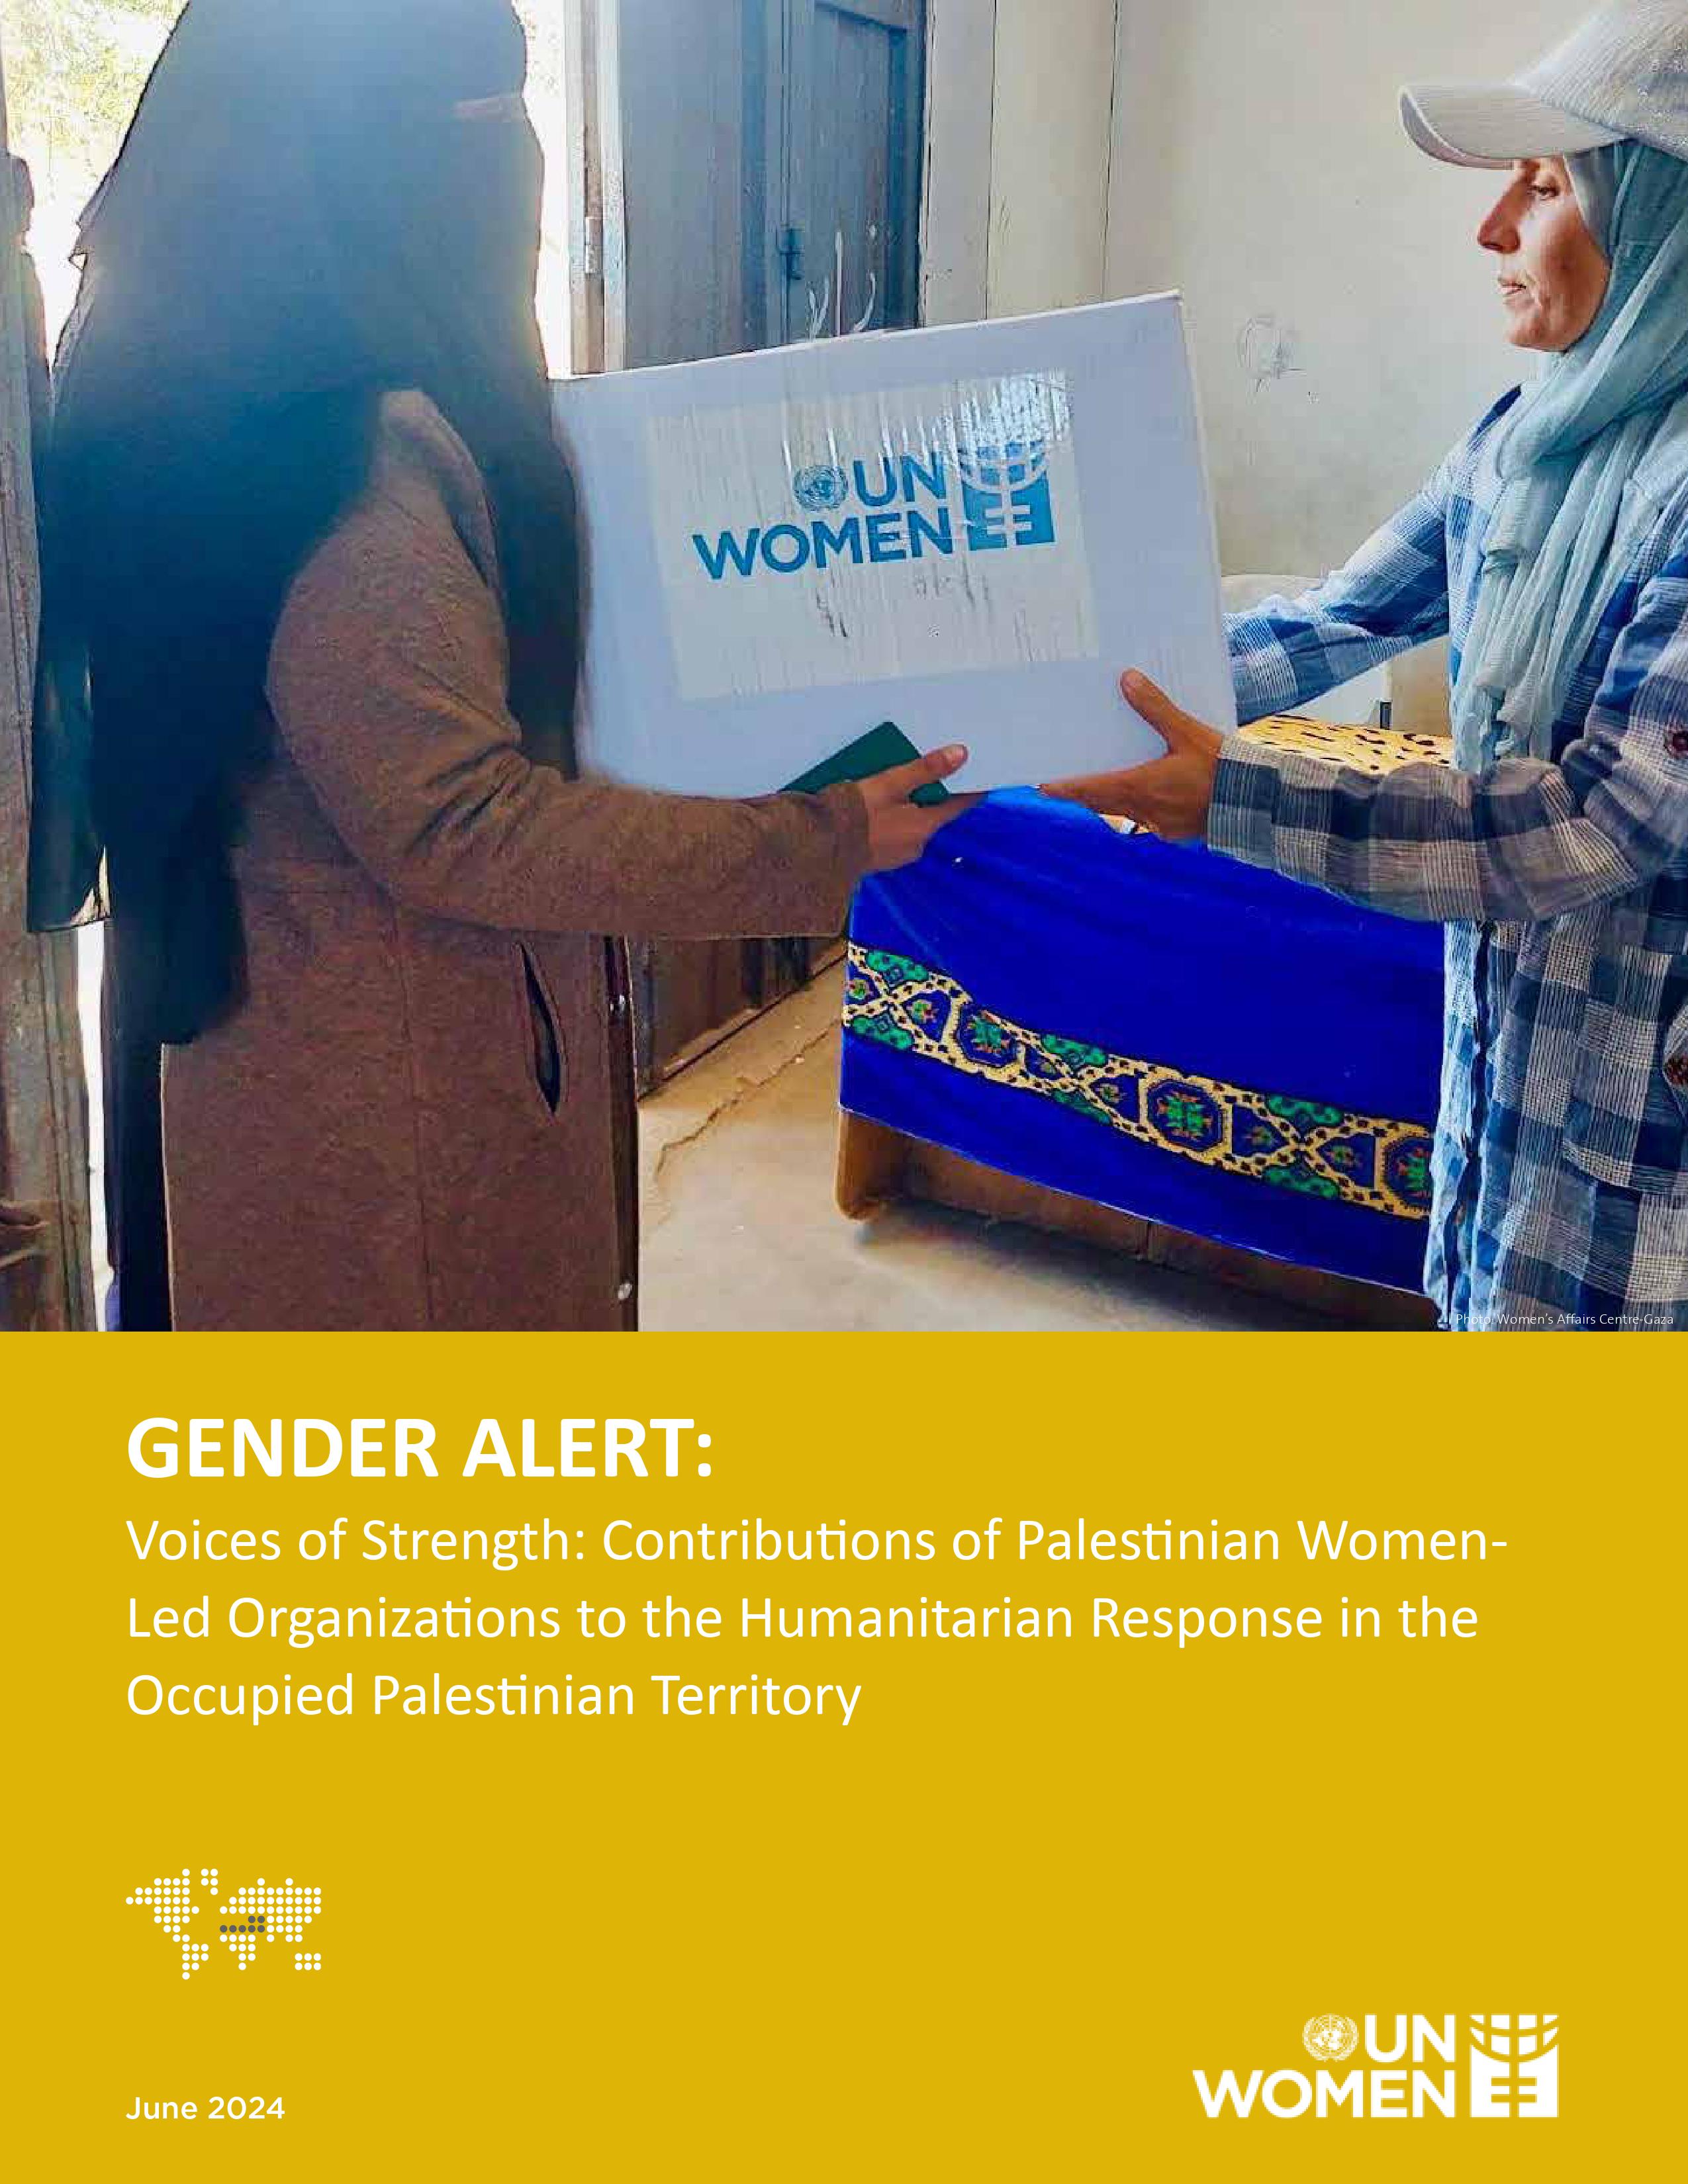 UN Women Palestine Gender Alert on WLOs